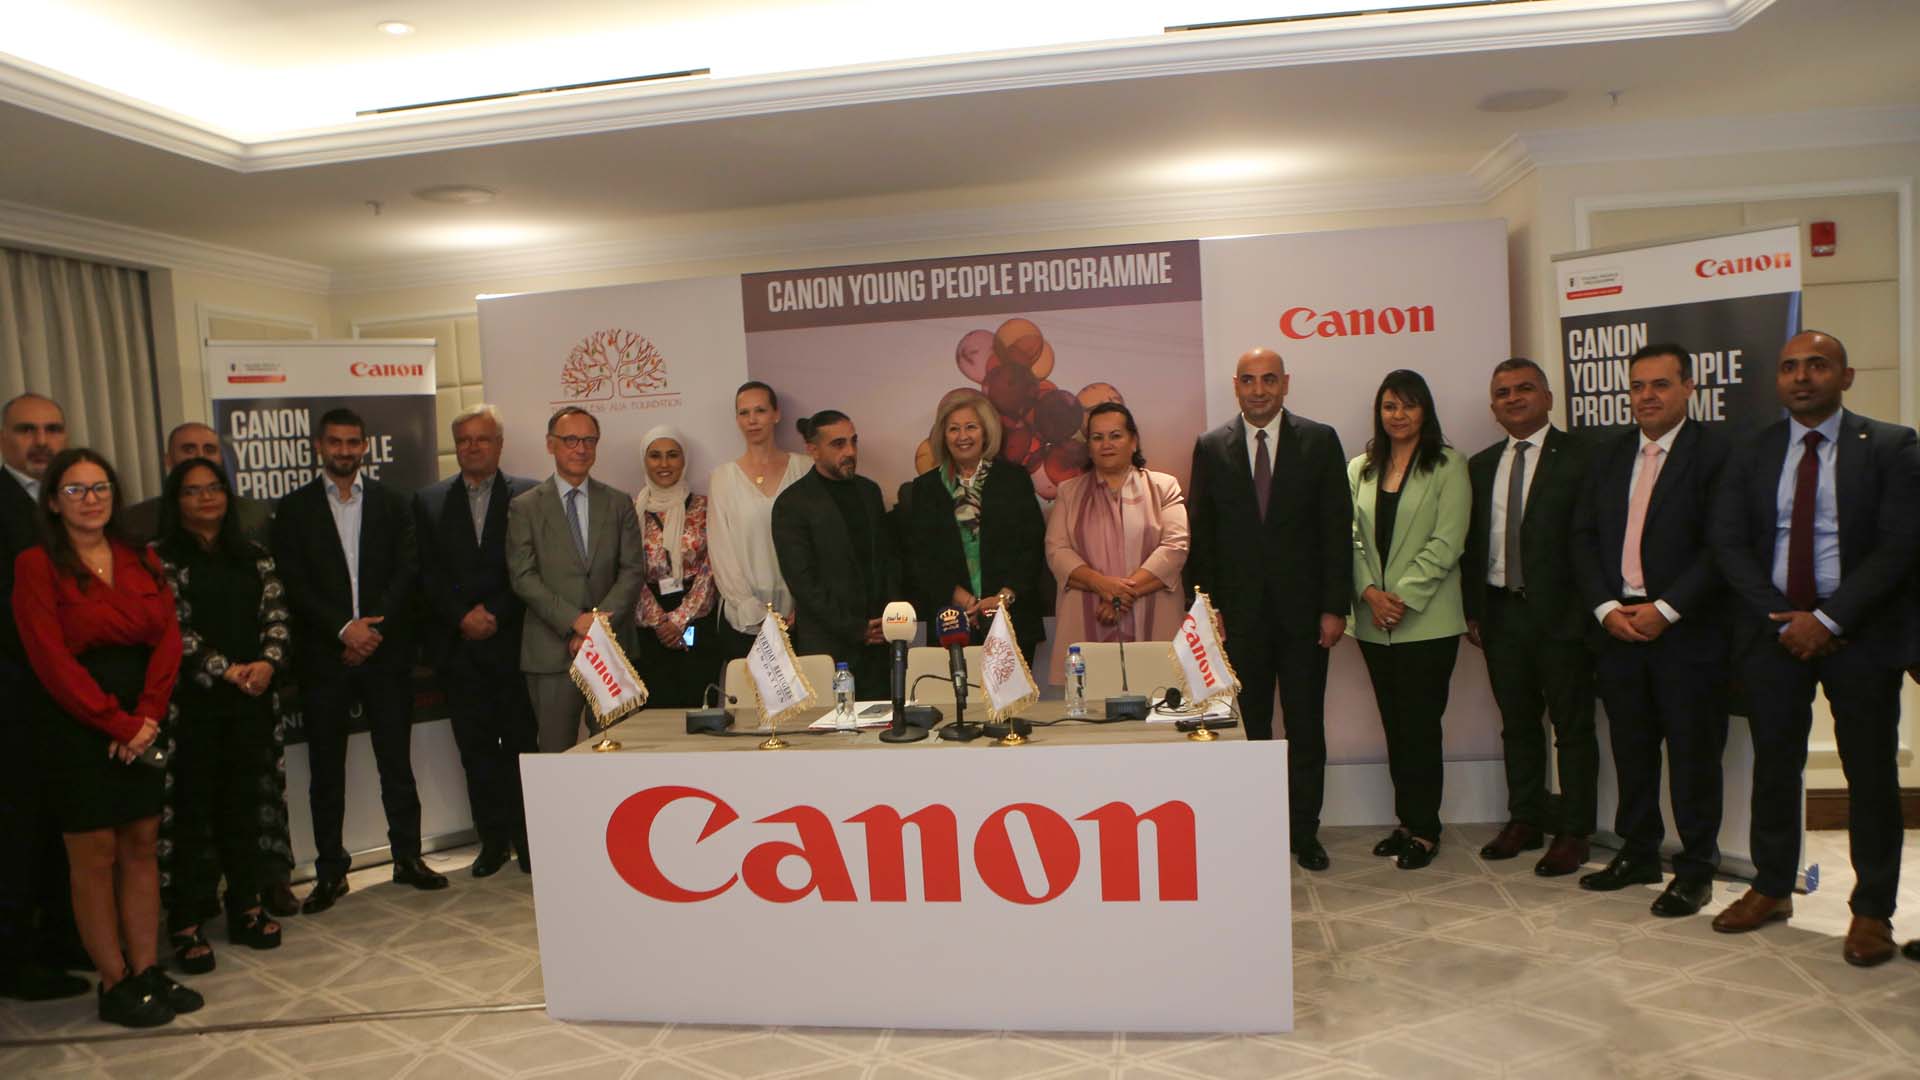 كانون Canon تطلق "برنامج الشباب" في الأردن لإلهام الشباب وتثقيفهم وتمكينهم